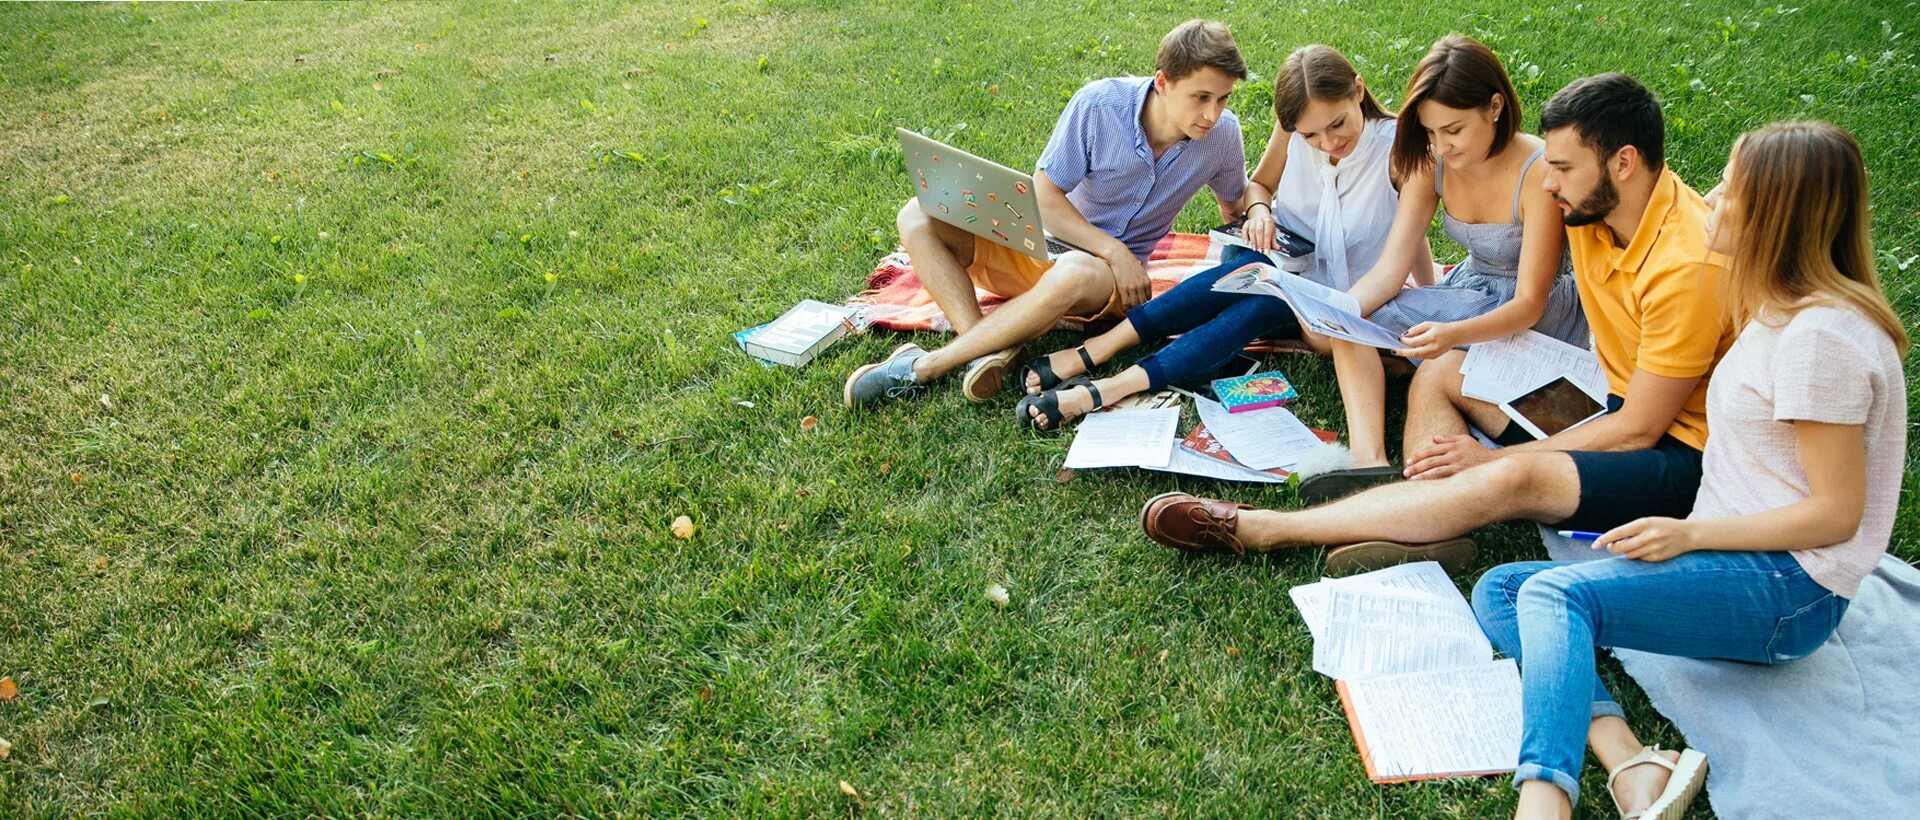 Студенты в парке. Студенты на отдыхе. Студенты на газоне. Студенты на свежем воздухе. Студенты природа групповой